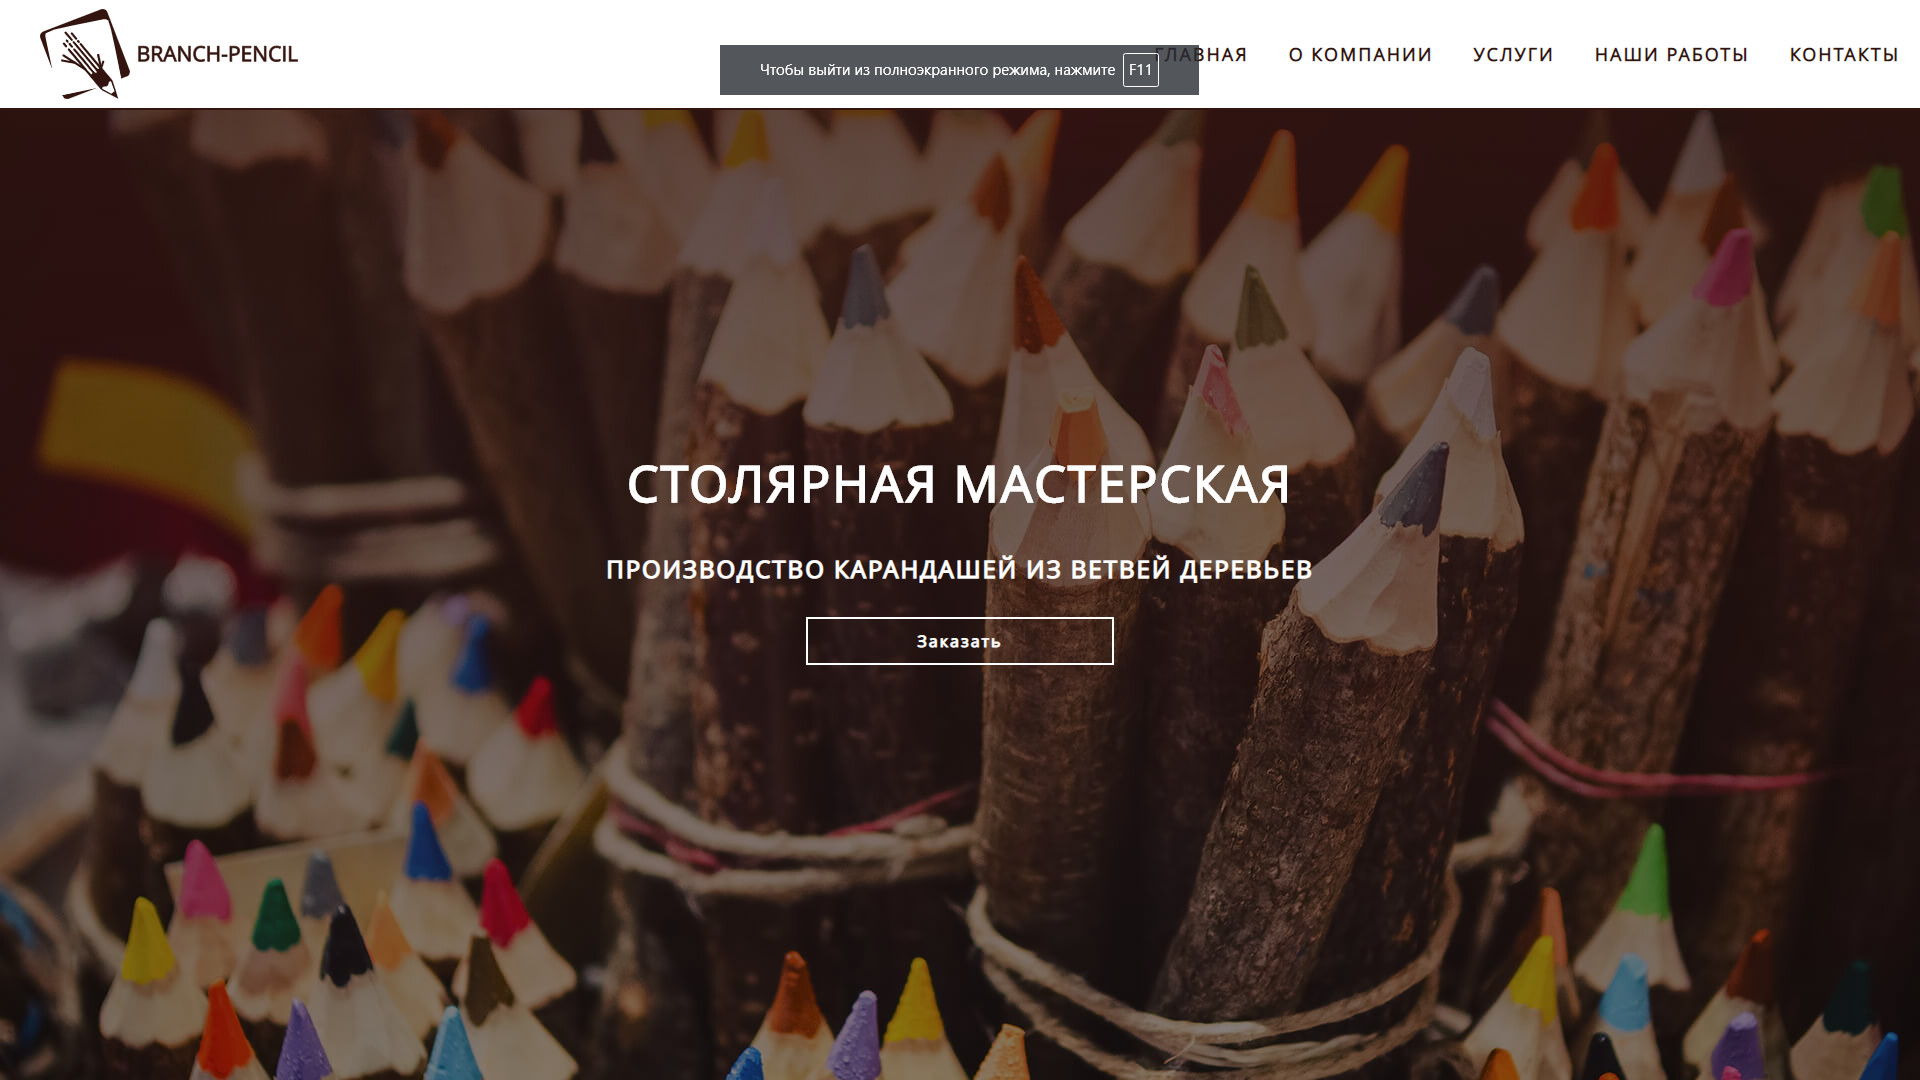 branch-pencil.ru